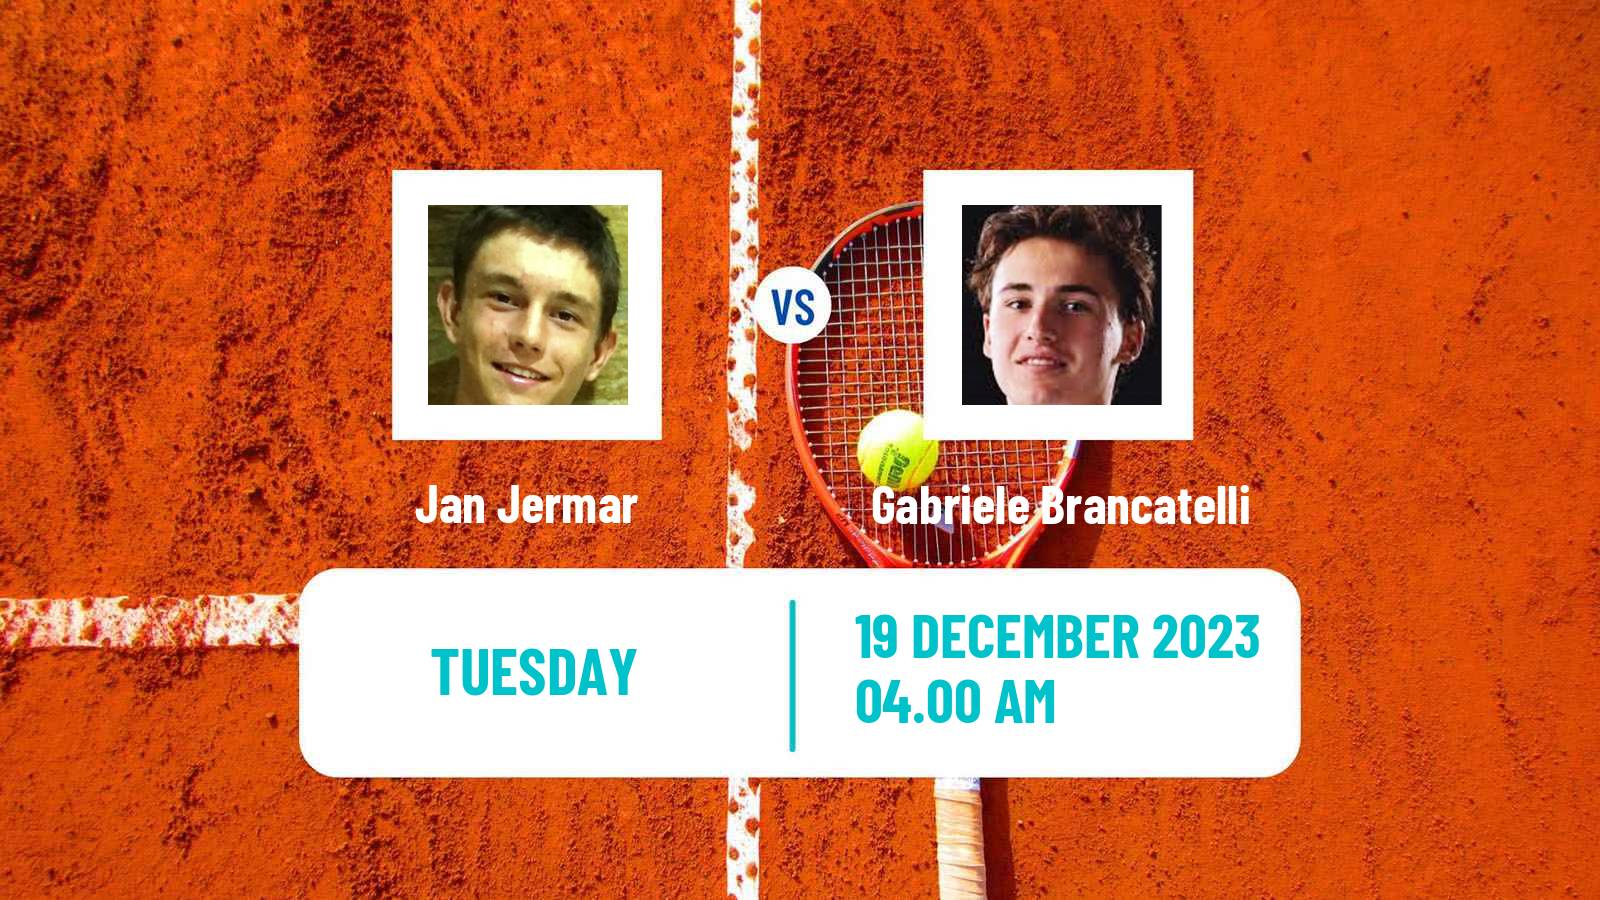 Tennis ITF M15 Antalya 21 Men Jan Jermar - Gabriele Brancatelli